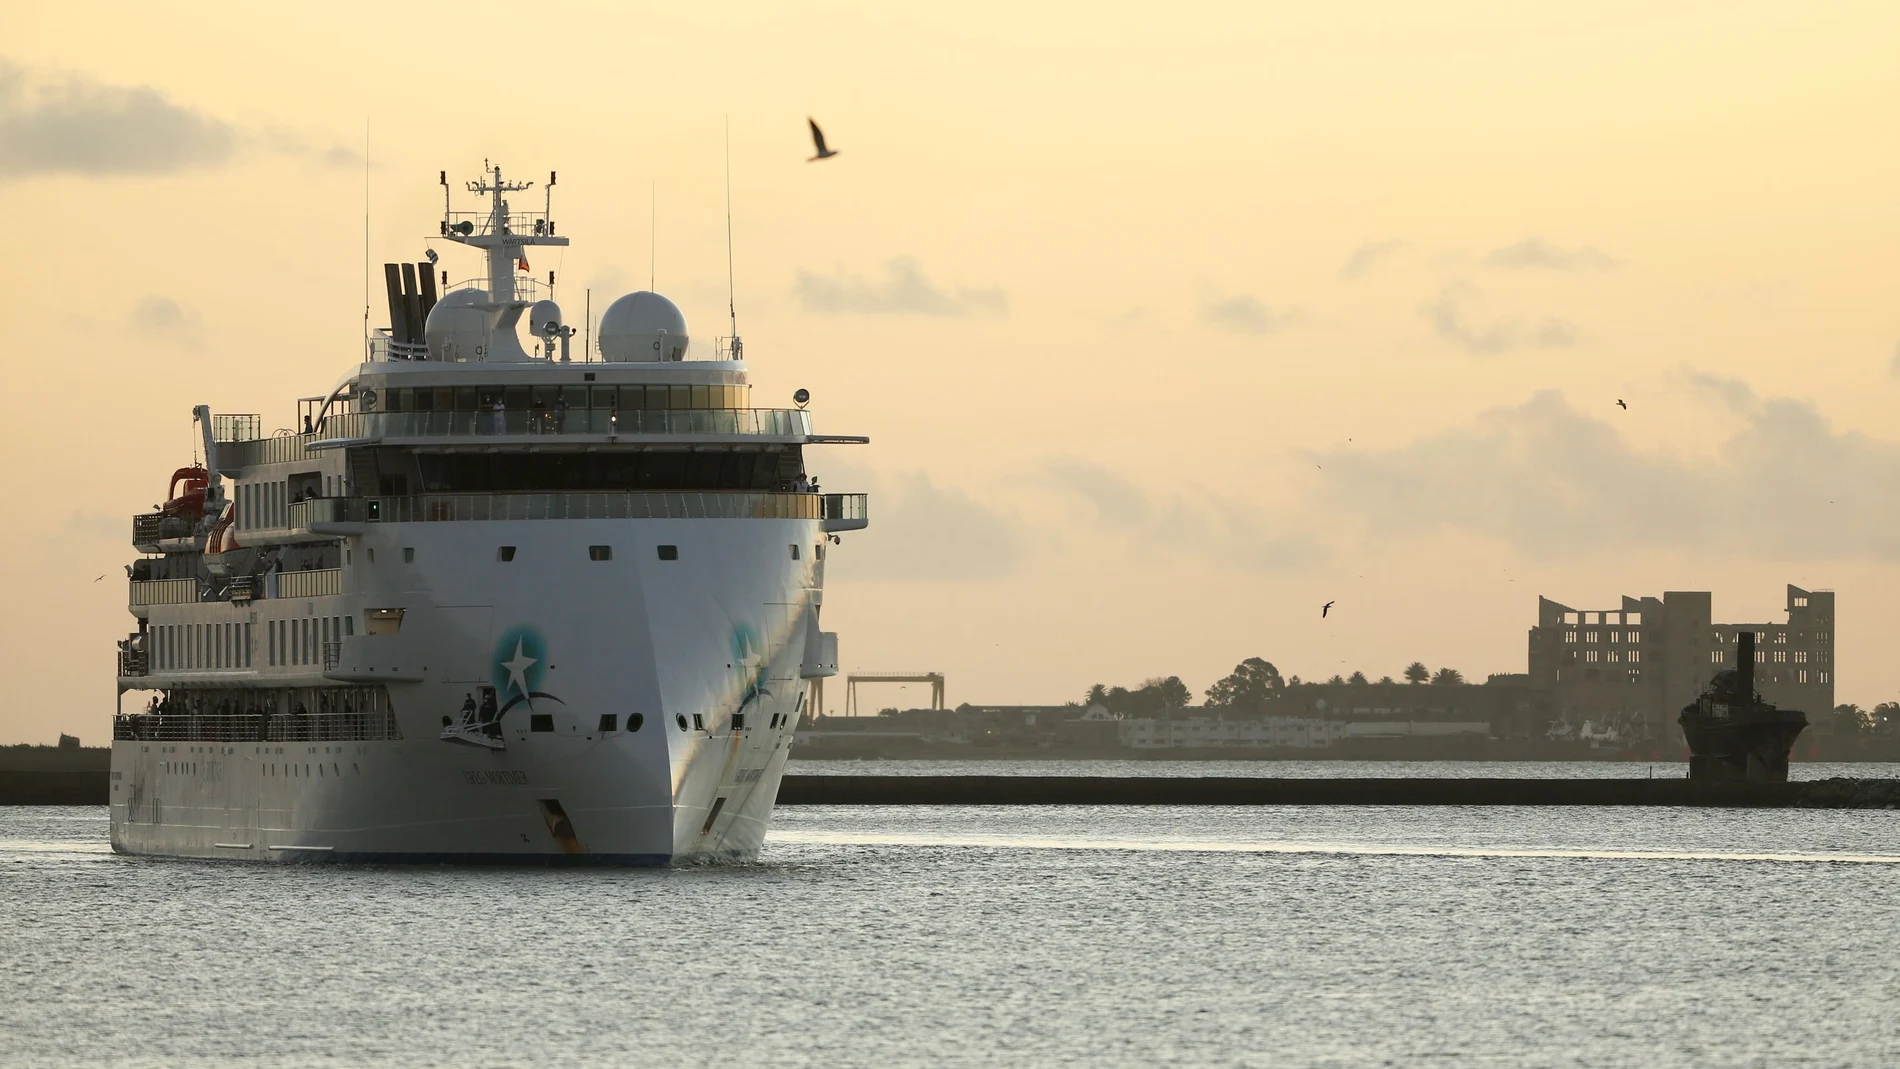 Australian cruise ship Greg Mortimer arrives at the port in Montevideo